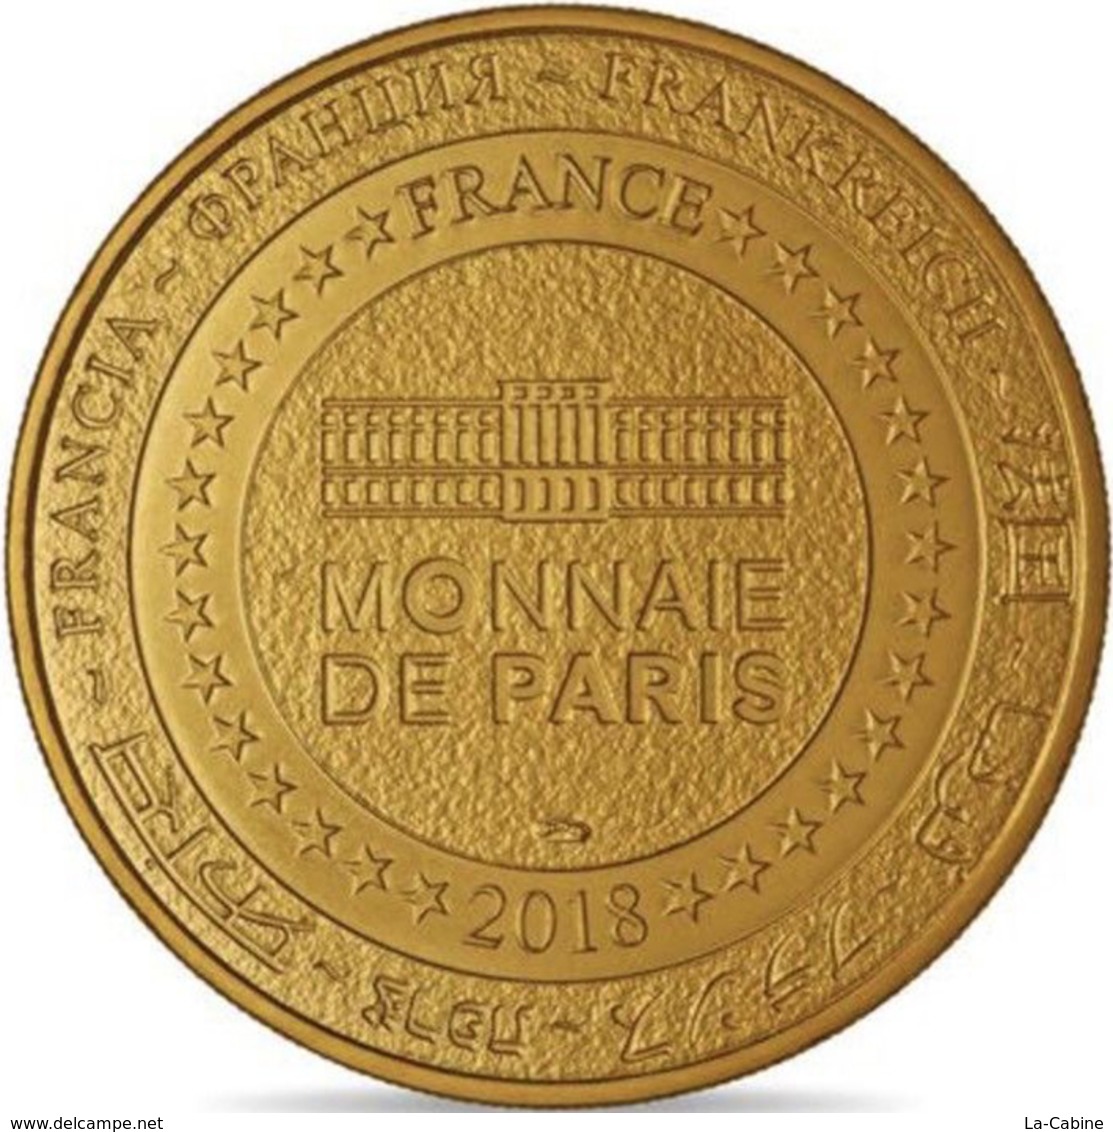 08 GIVET CITADELLE DE CHARLEMONT MÉDAILLE TOURISTIQUE MONNAIE DE PARIS 2018 JETON MEDALS TOKENS COINS - 2018